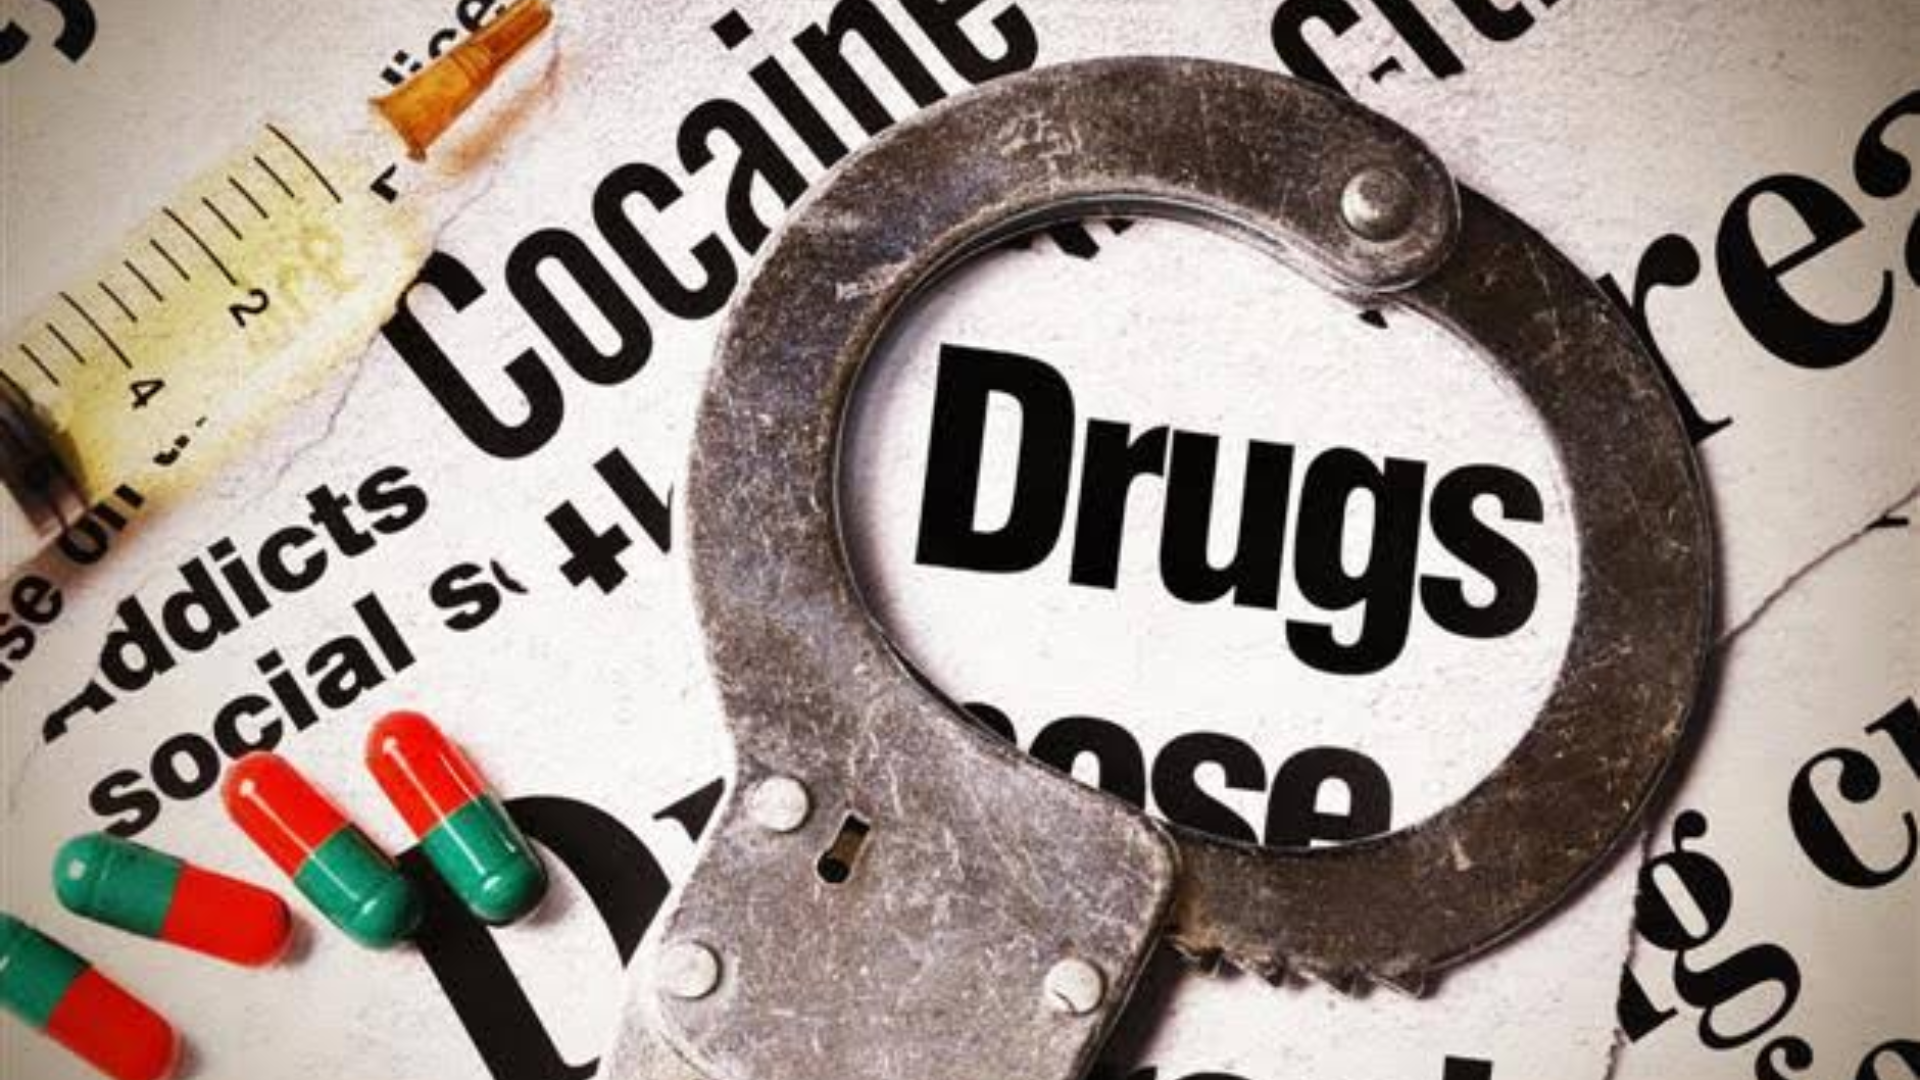 Properties Worth Rs 15 lakh Of Drug Peddler Seized In J-K’s Baramulla